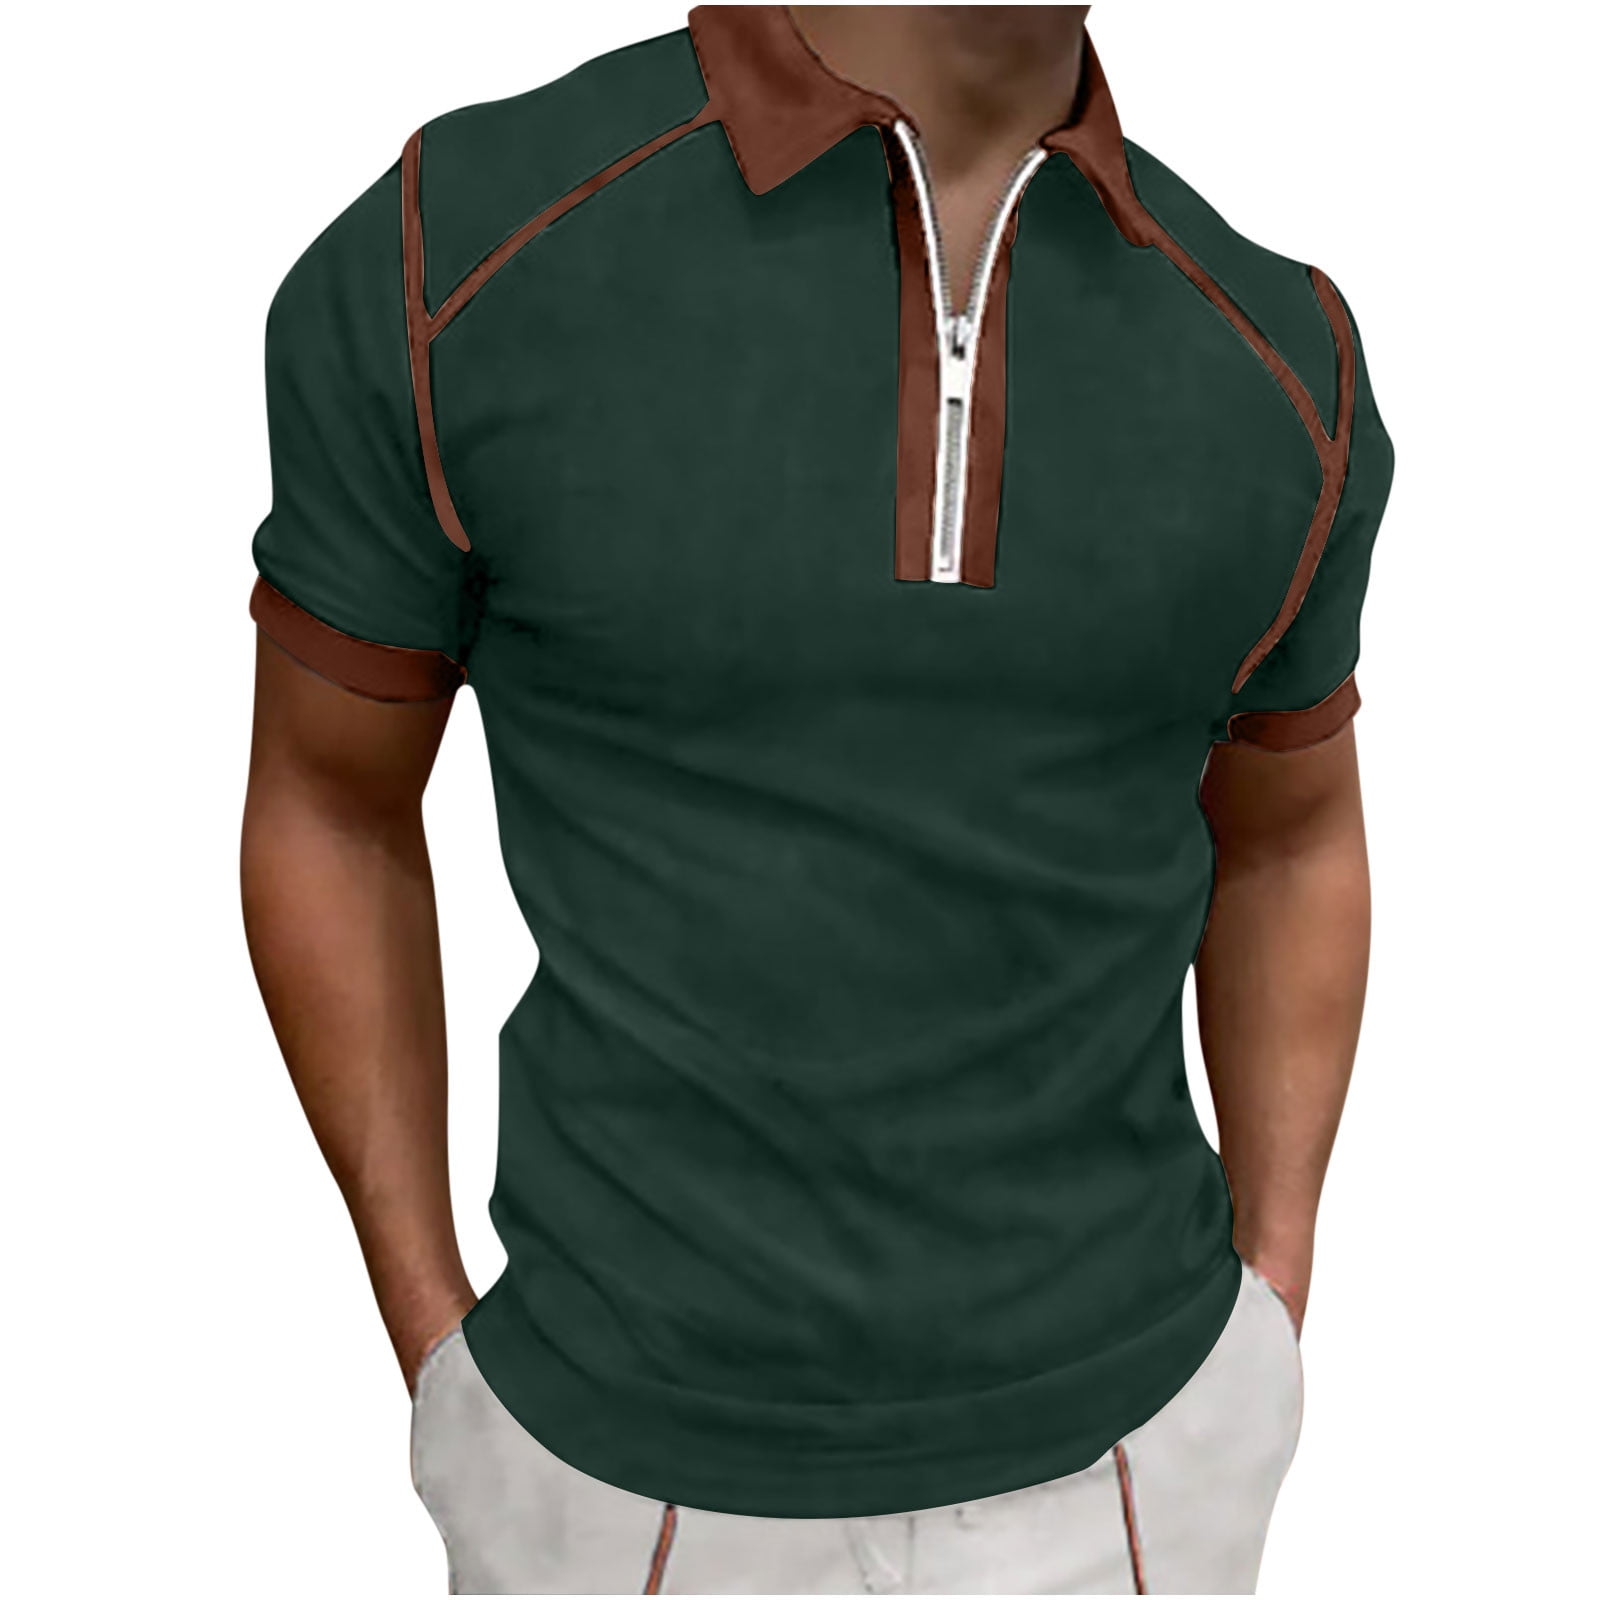 Class A Colorblock Shirt *Short Sleeve - Sound Uniform Solutions